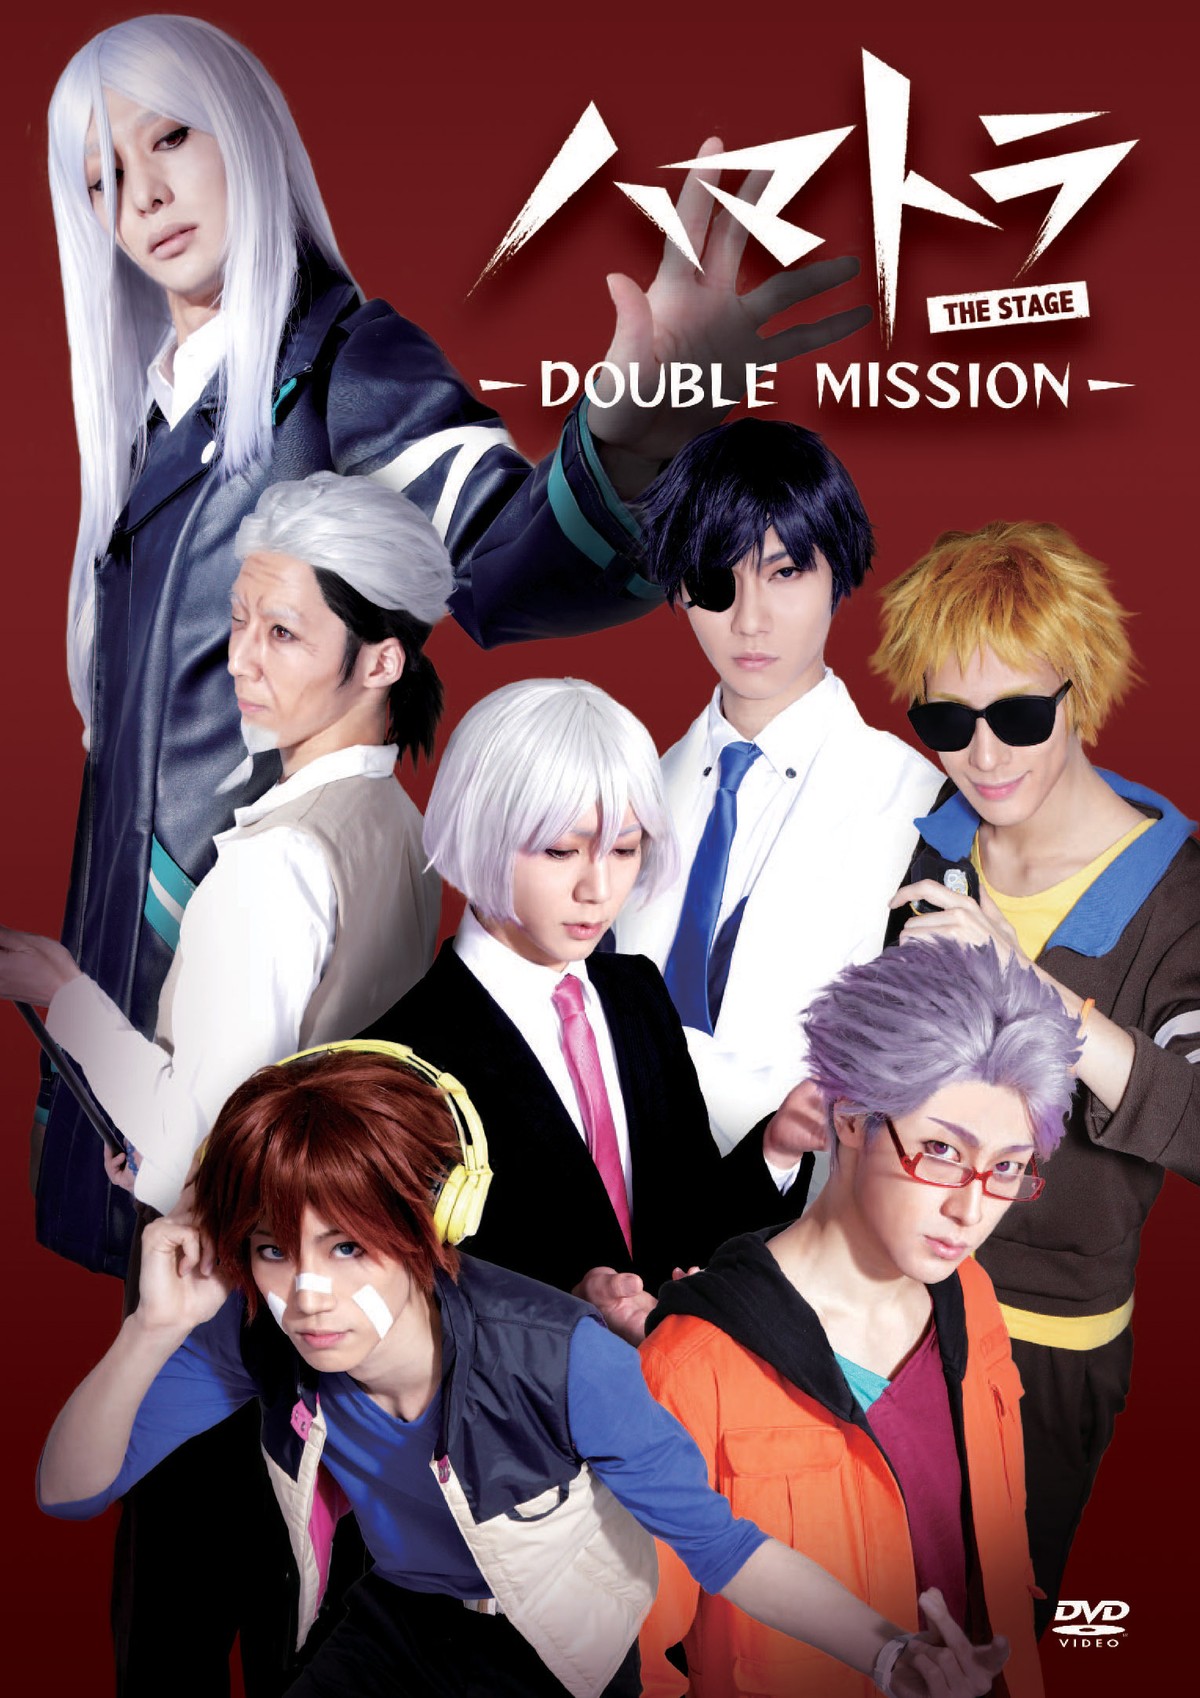 ハマトラ The Stage Double Mission 公演dvd 映劇通信販売